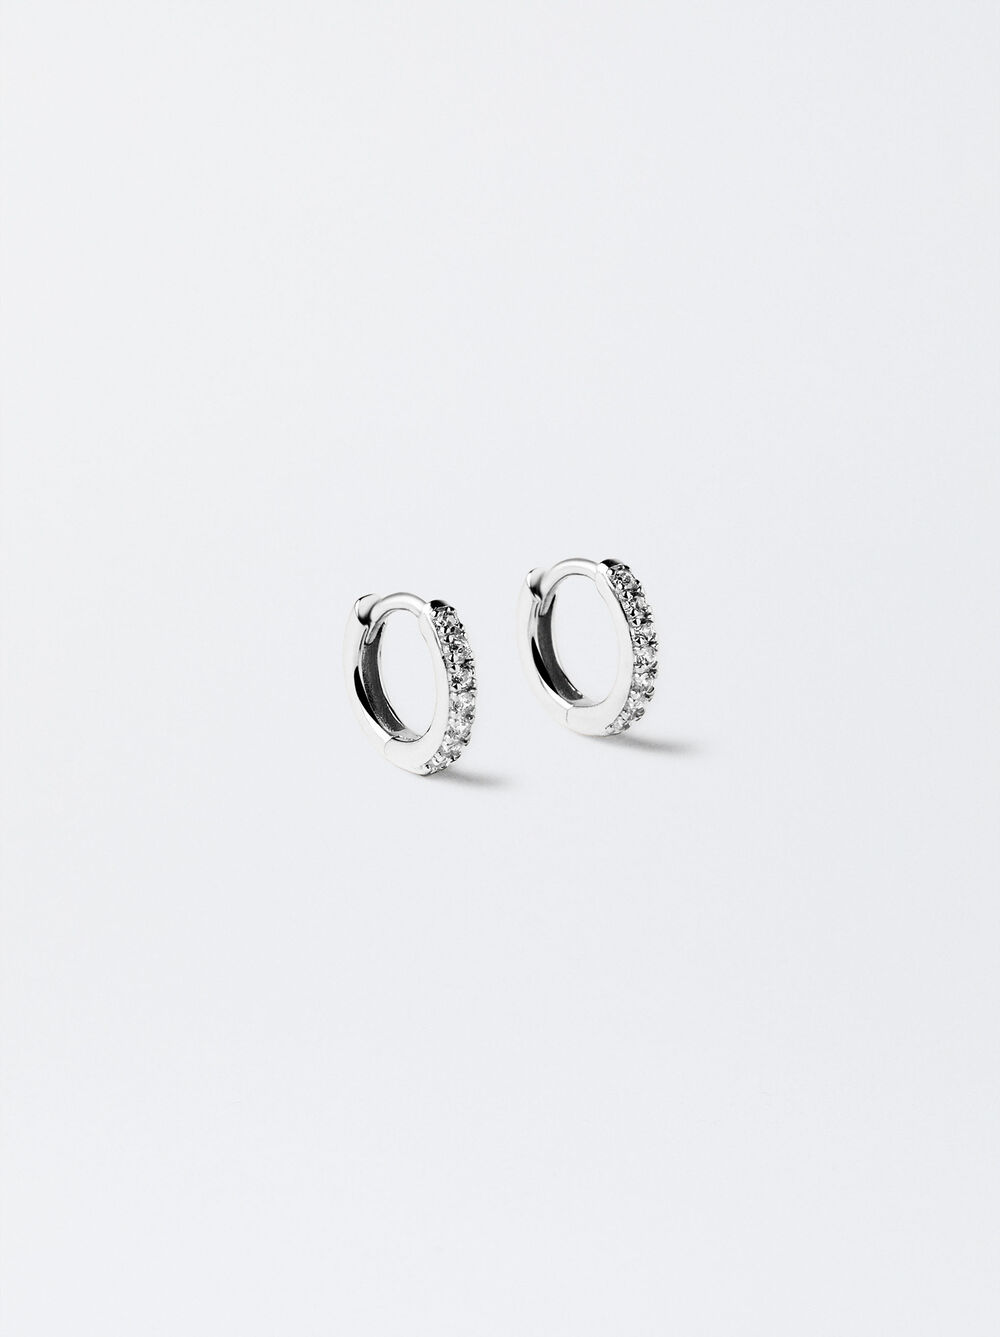 925 Silver Personalised Hoop Earrings With Zirconias